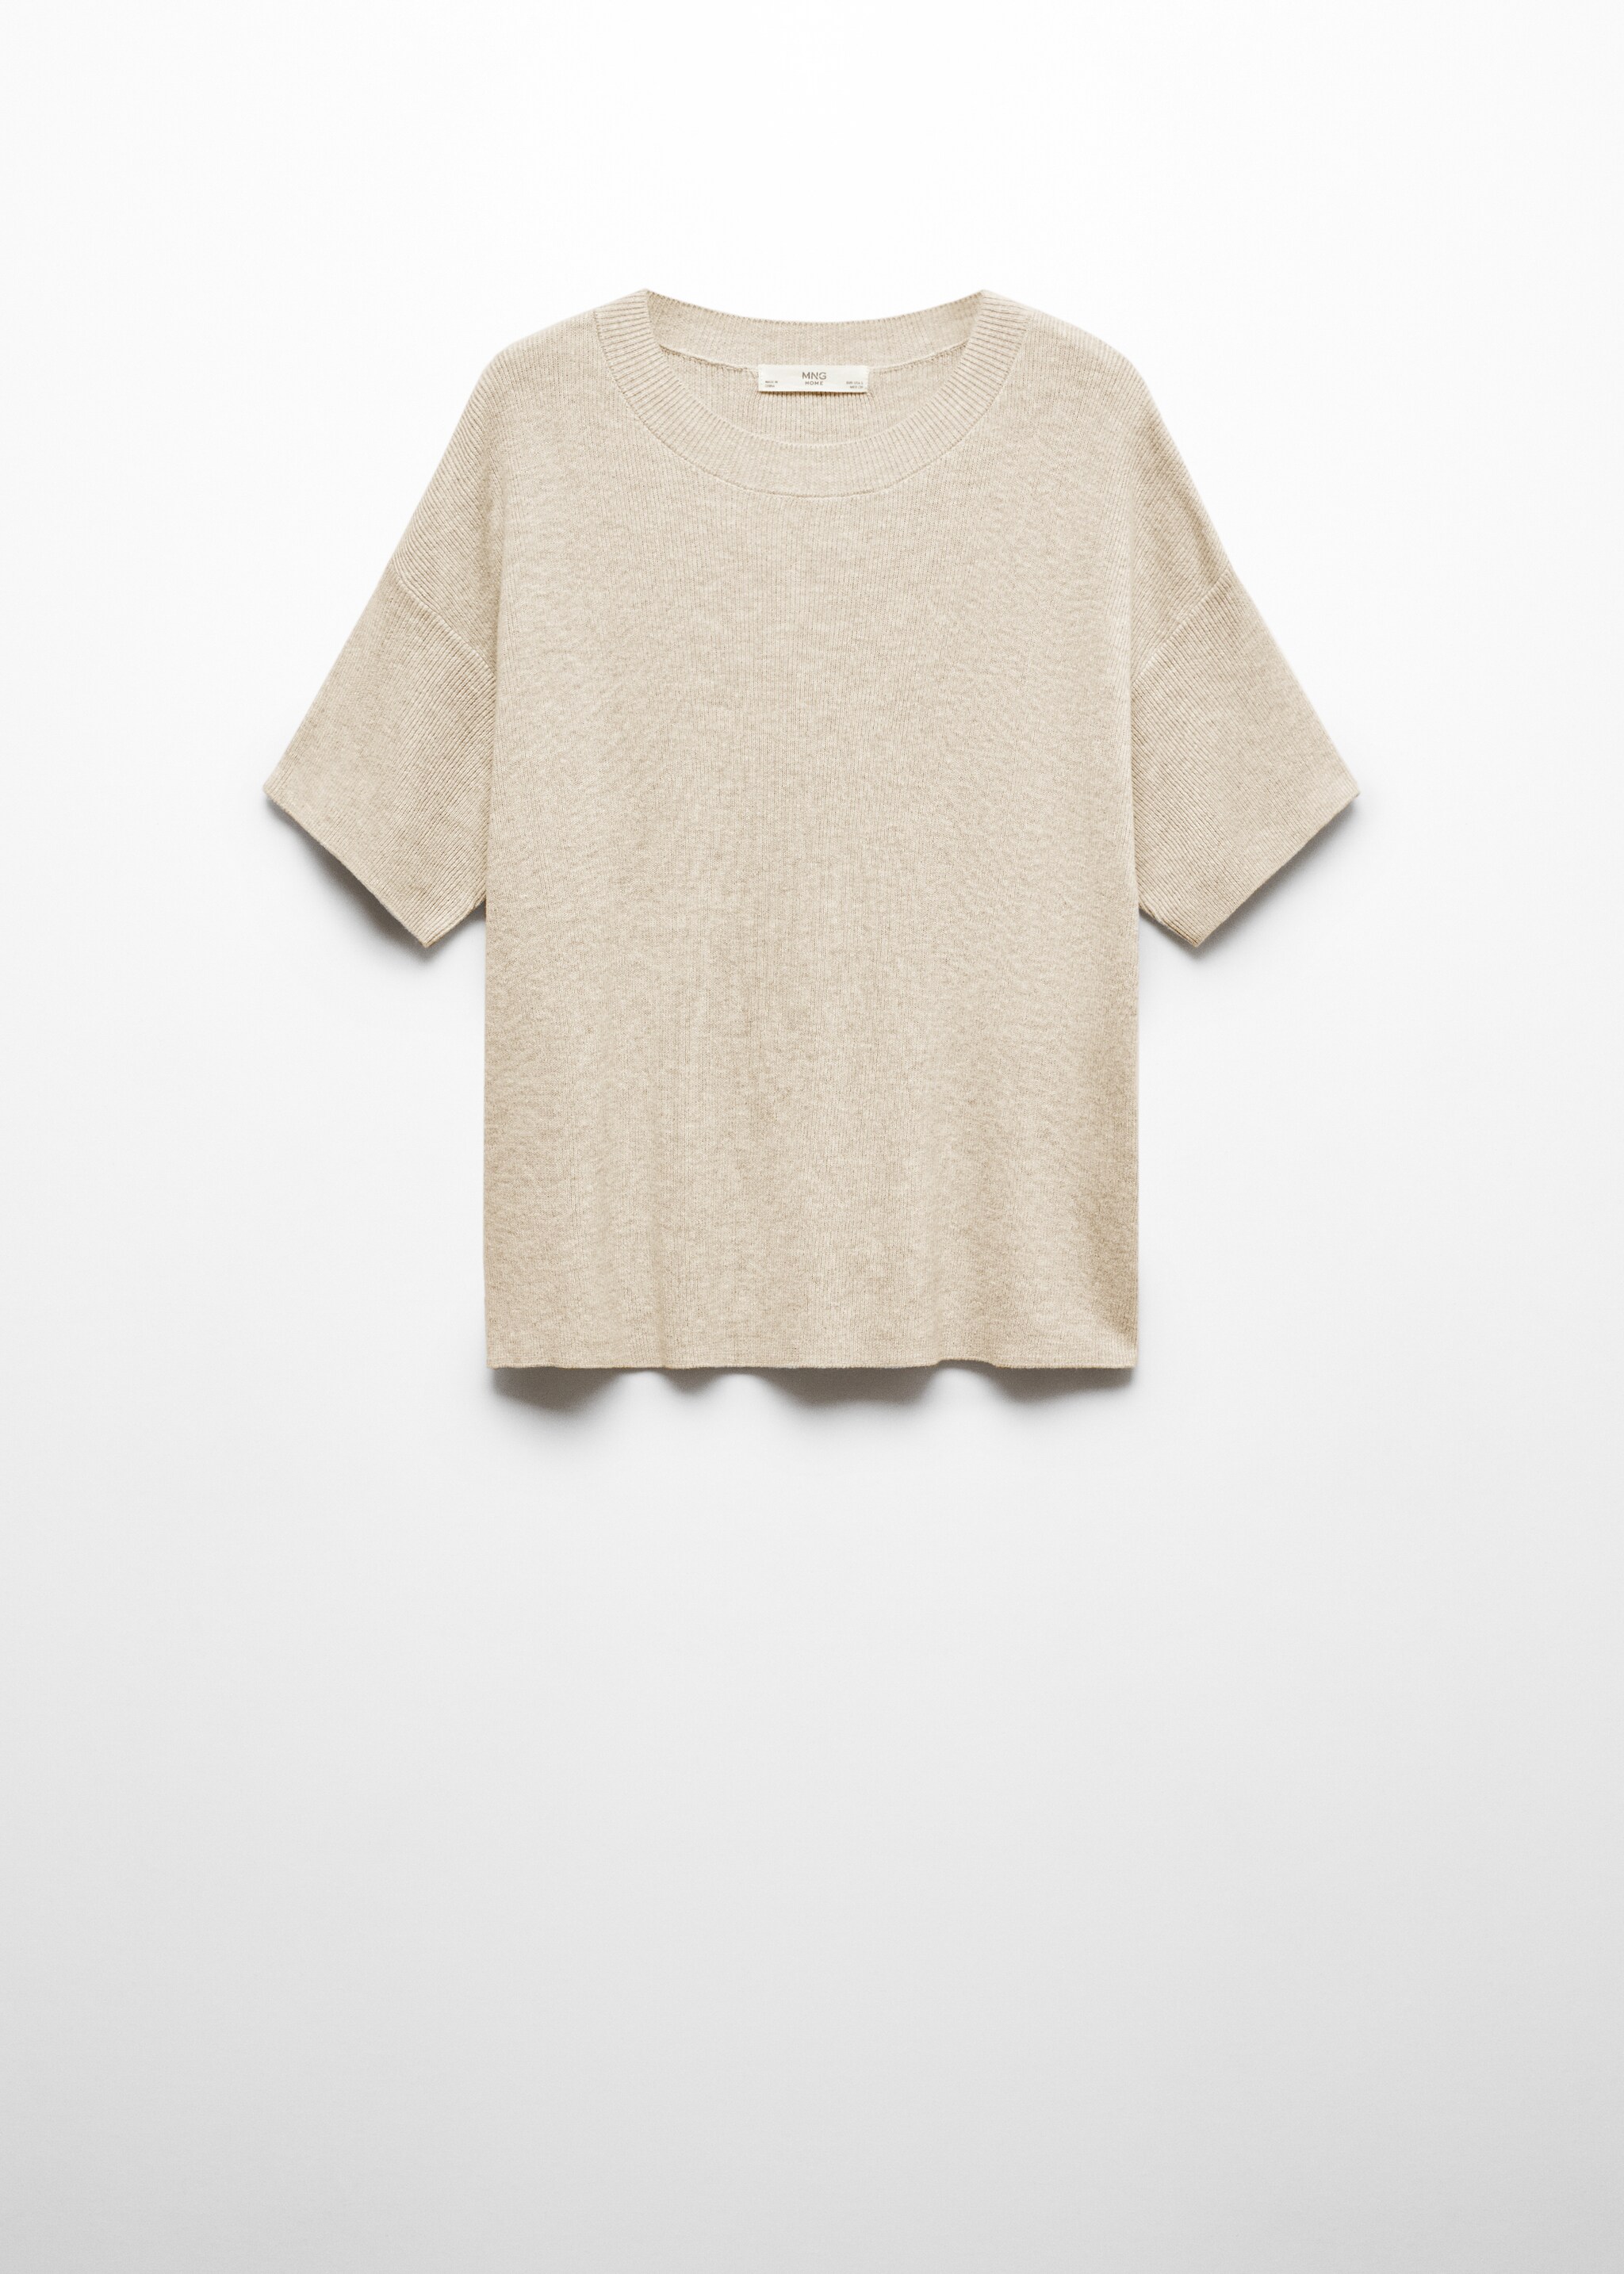 T-shirt maille coton lin - Article sans modèle